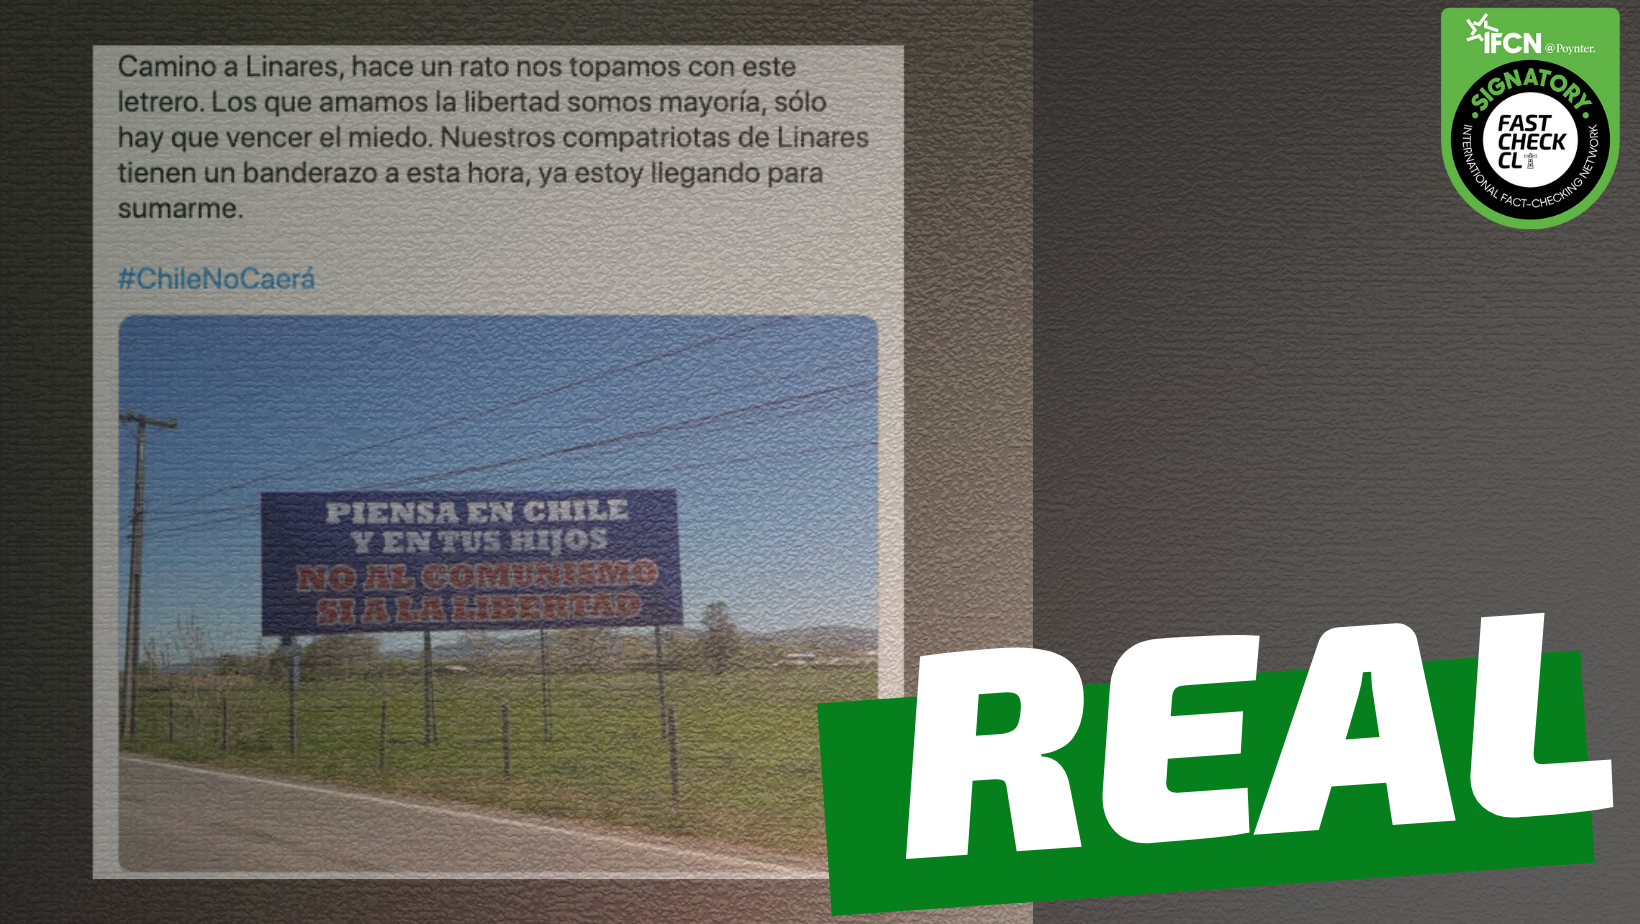 Read more about the article Cartel que dice: “Piensa en Chile y en tus hijos. No al comunismo, sí a la libertad”: #Real